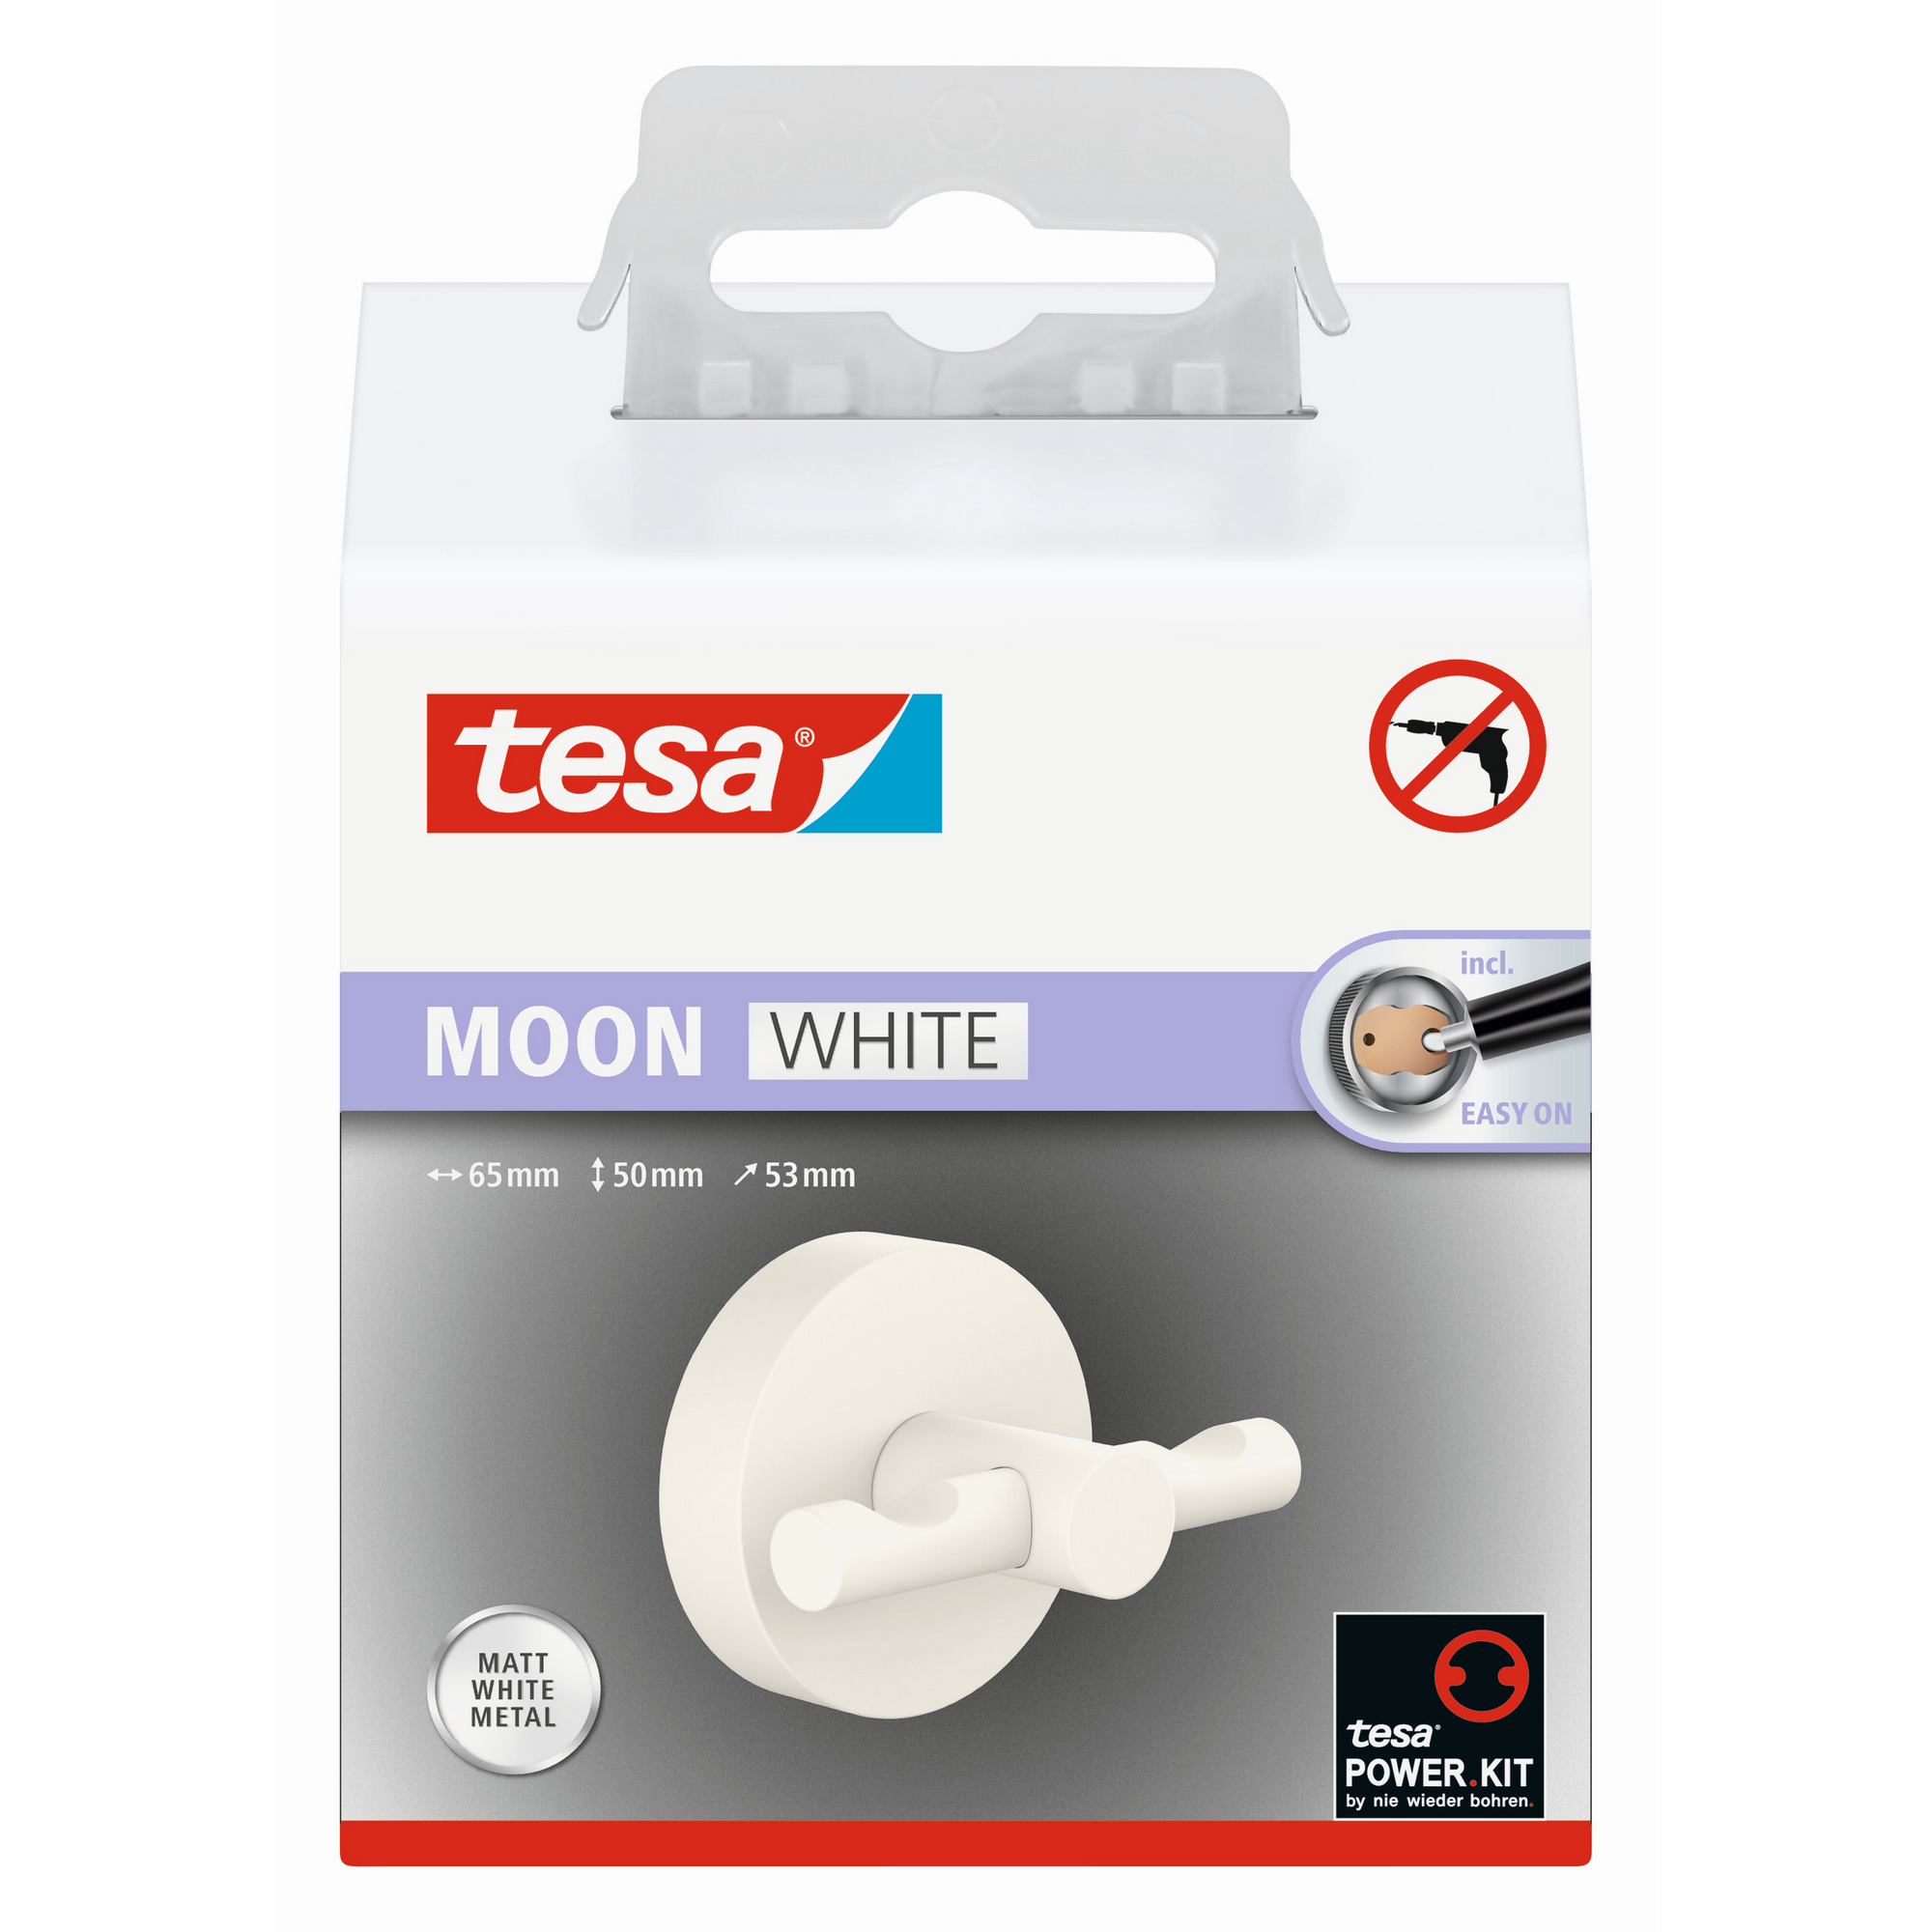 Bademantelhaken 'Moon White' weiß matt selbstklebend + product picture